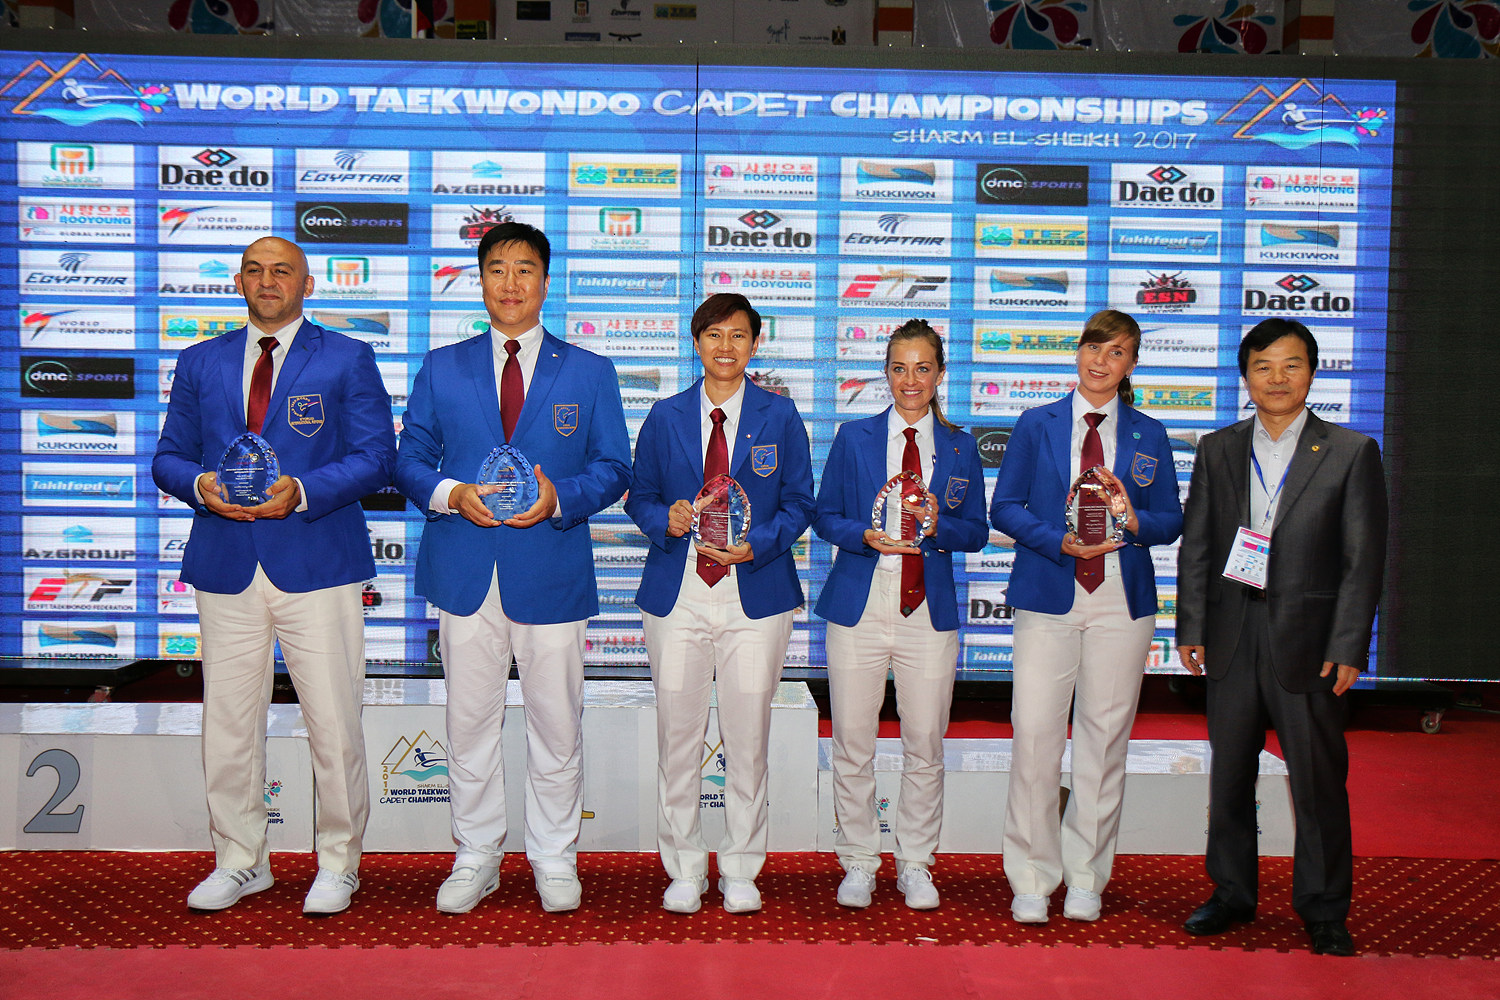 Best Referee Award (from left Abdelfattah, Choi, Lee, Scheffler, Tarasevich)